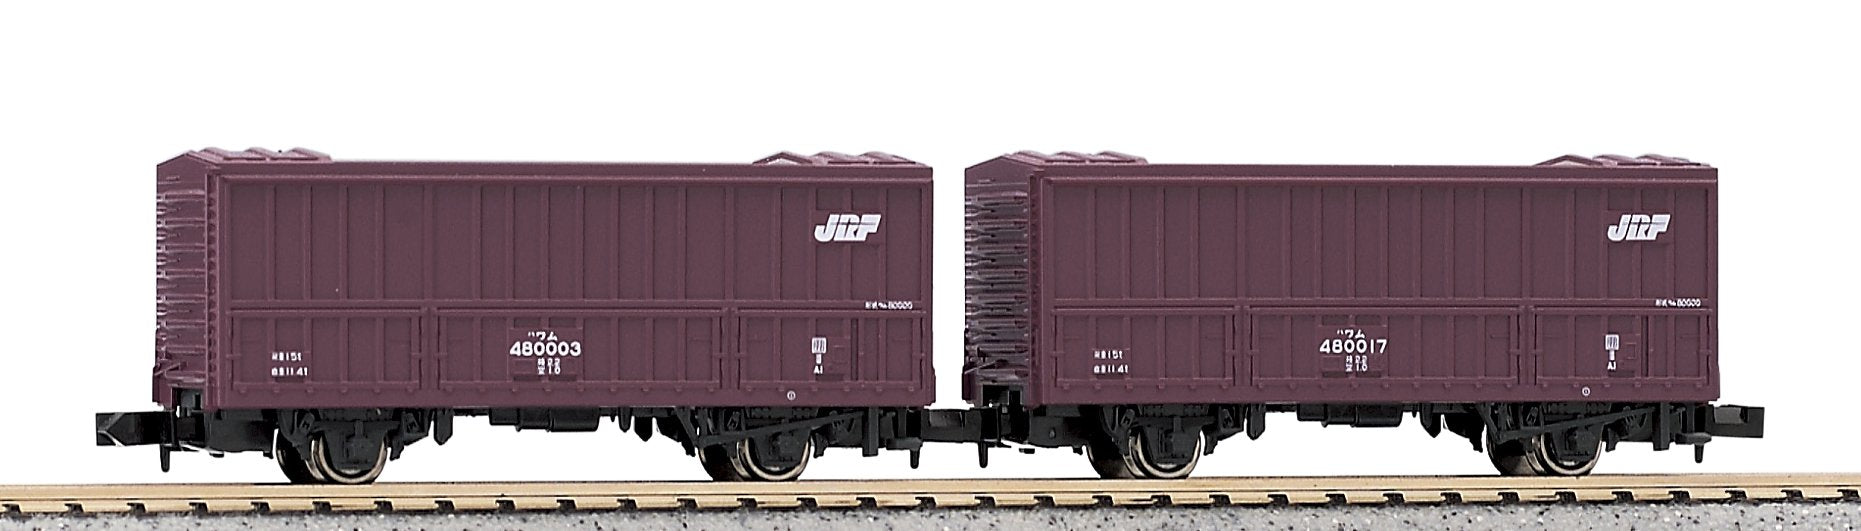 Kato N Gauge 8034 Wam 480000 Lot de 2 wagons de marchandises pour chemin de fer